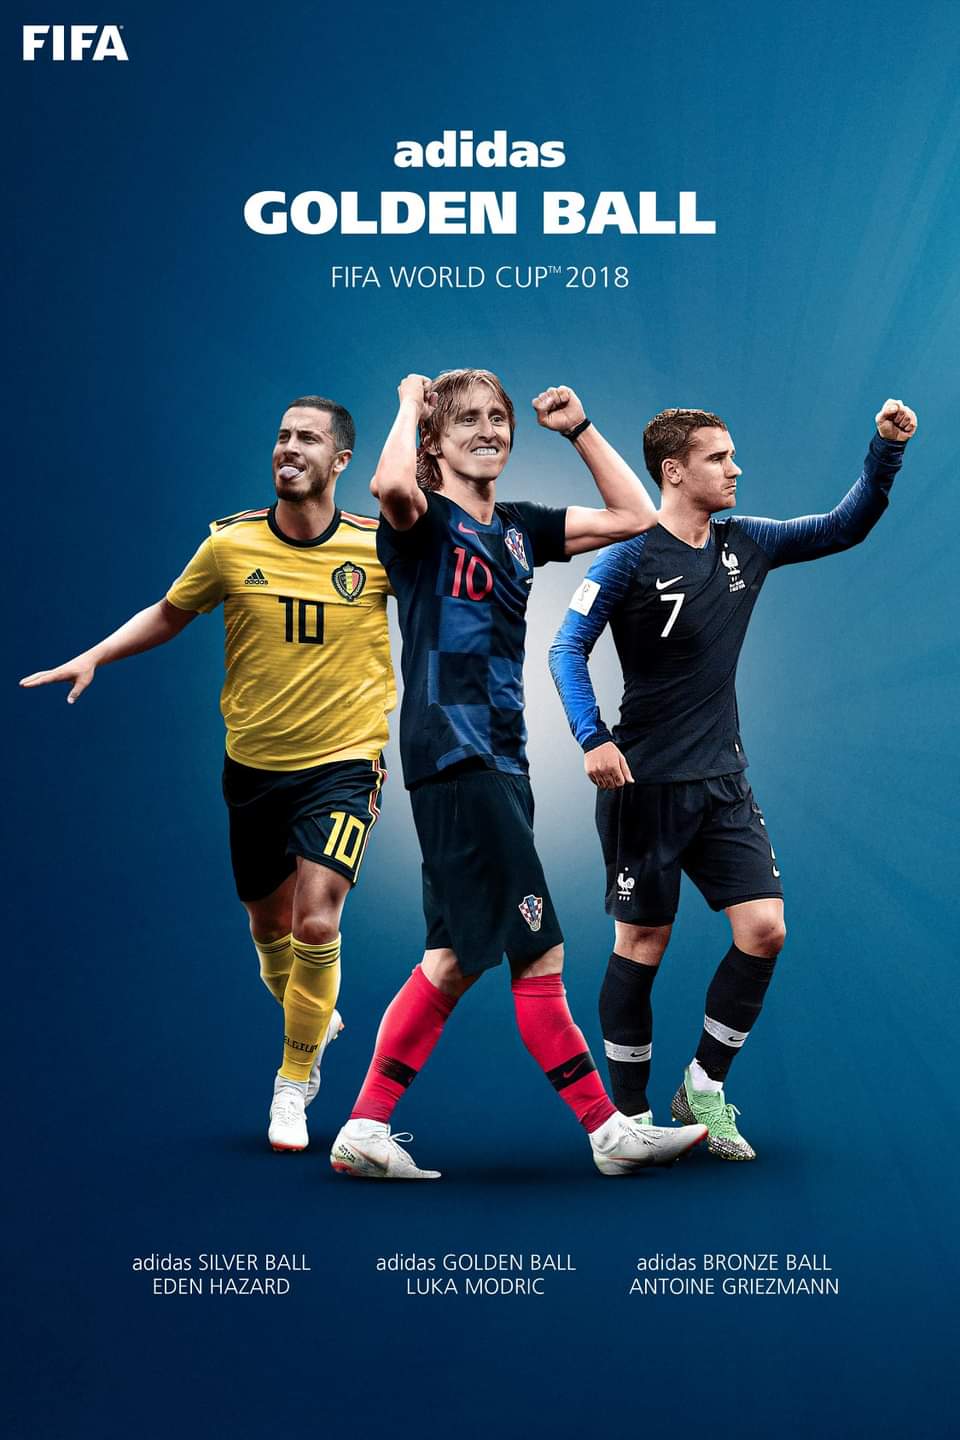 2018 월드컵 아자르가 미친놈인 이유.jpg